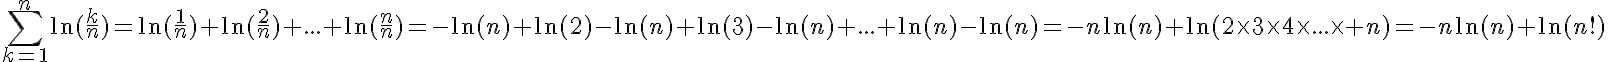 5$\Bigsum^{n}_{k=1}\ln(\frac{k}{n})=\ln(\frac{1}{n})+\ln(\frac{2}{n})+...+\ln(\frac{n}{n})=-\ln(n)+\ln(2)-\ln(n)+\ln(3)-\ln(n)+...+\ln(n)-\ln(n)=-n\ln(n)+\ln(2\times3\times4\times...\times n)=-n\ln(n)+\ln(n!)